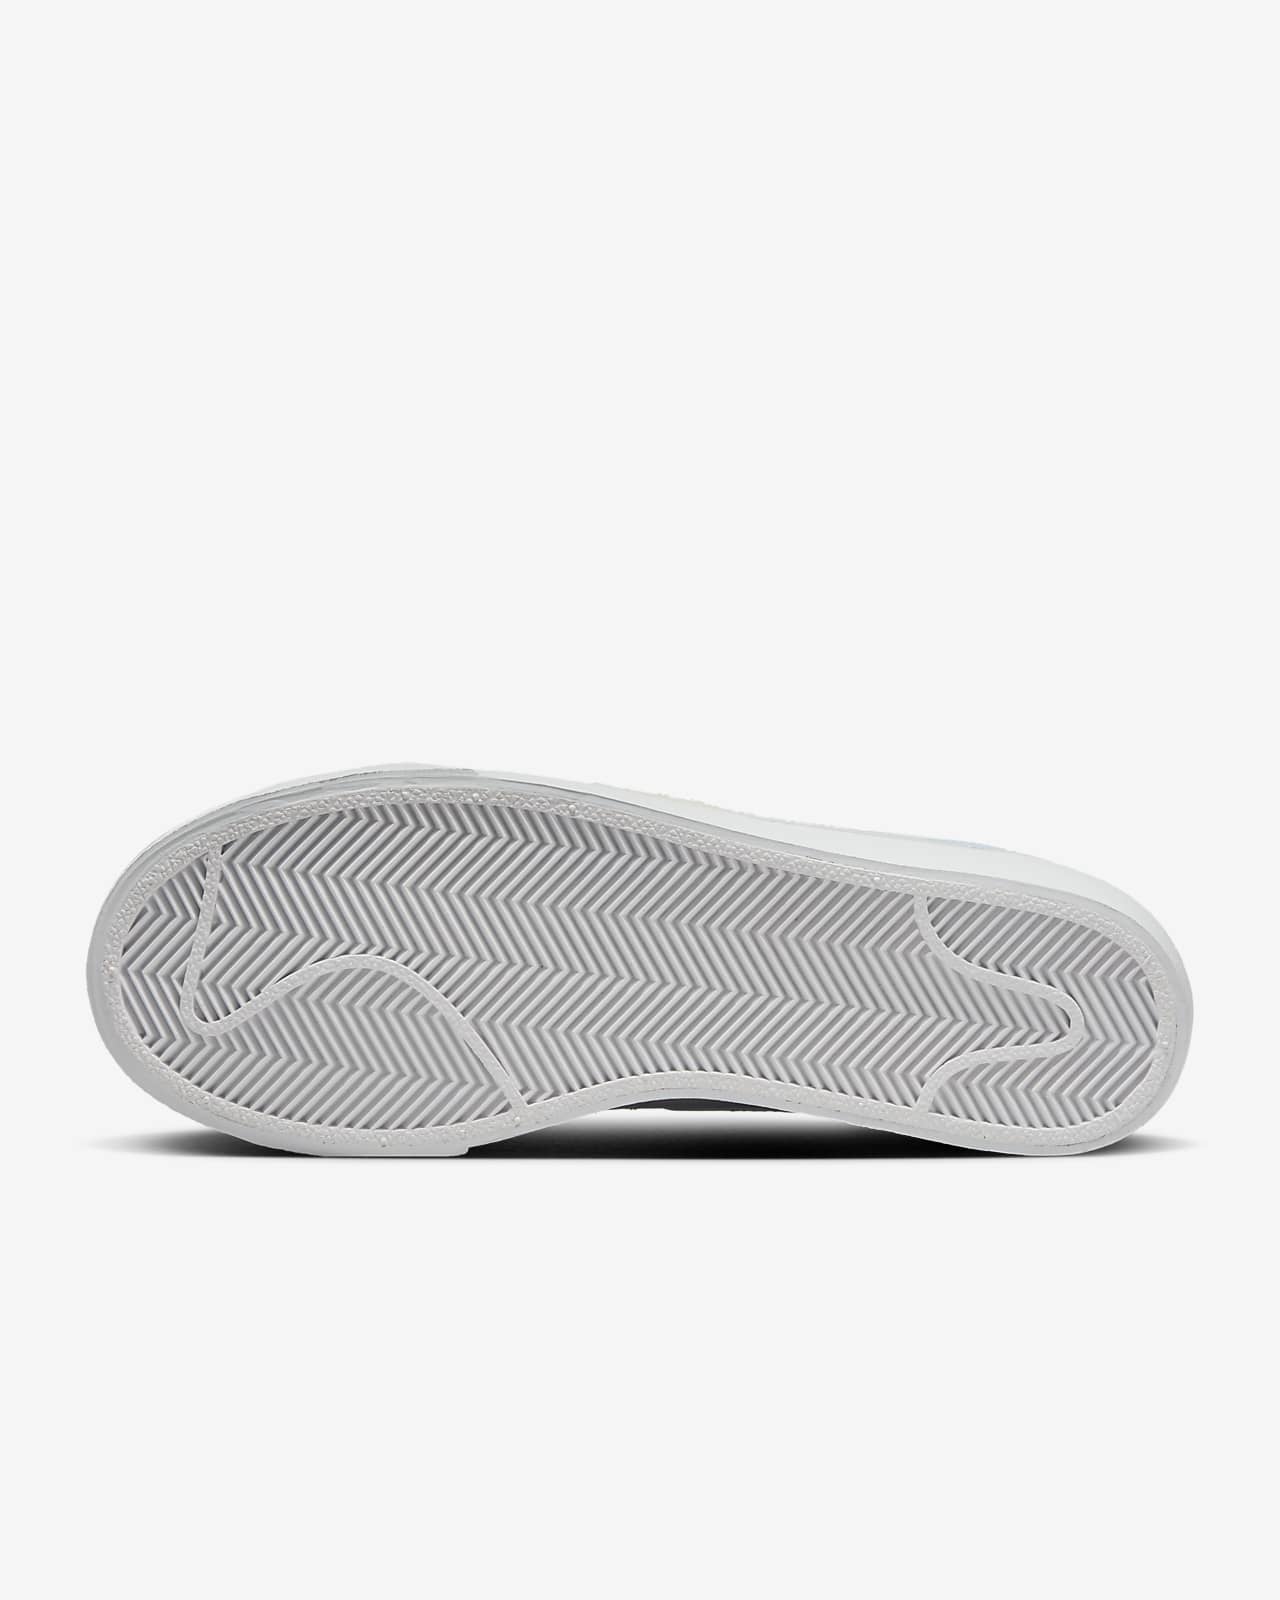 Nike Platform Shoes Black And White | lupon.gov.ph